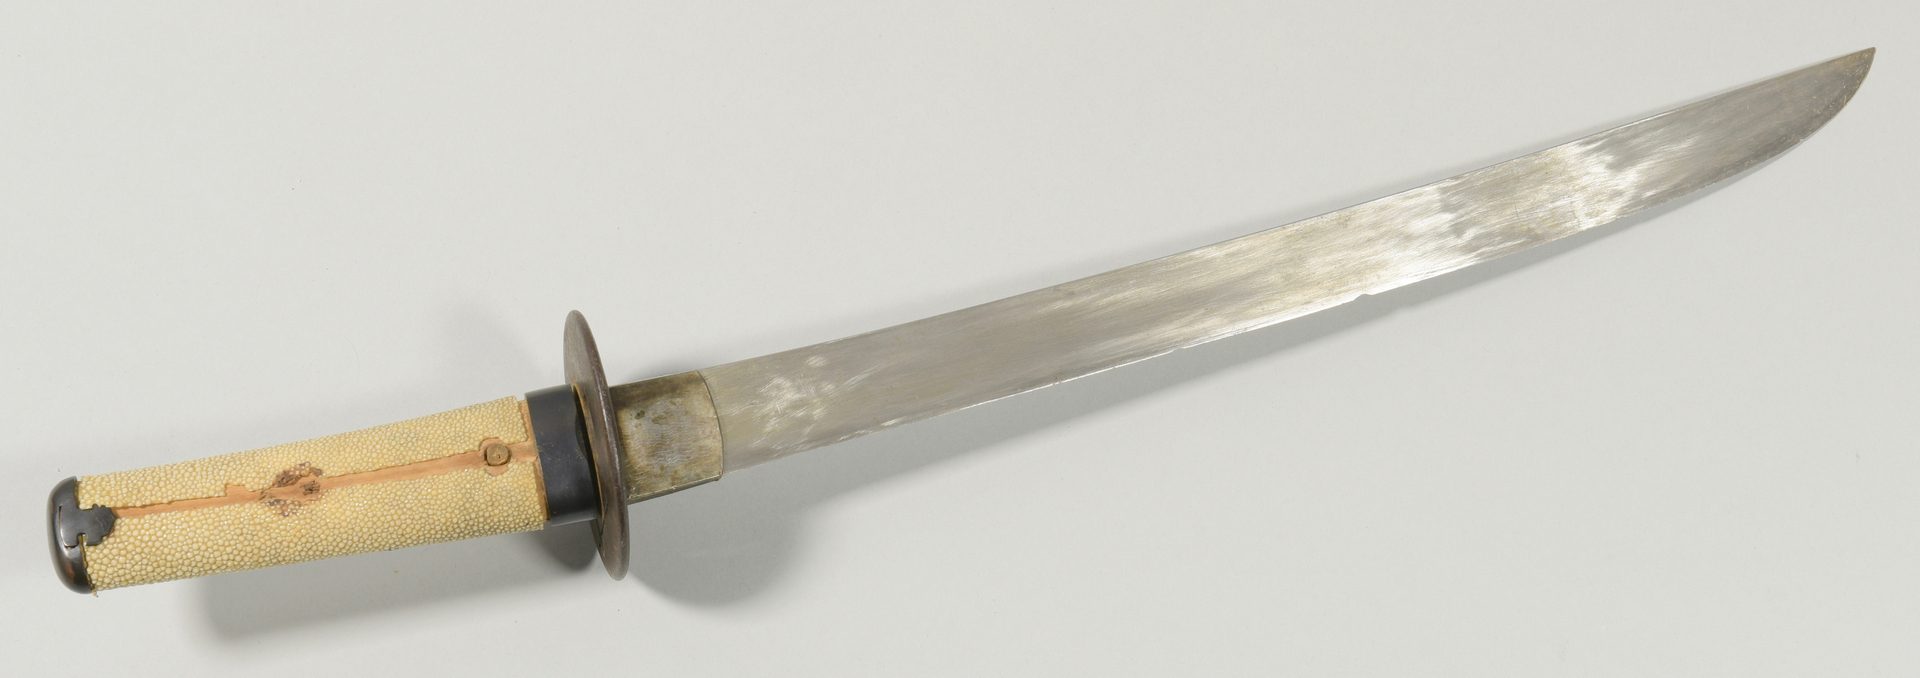 Lot 312:  Japanese Wakizashi Sword w/ Early Tsuba